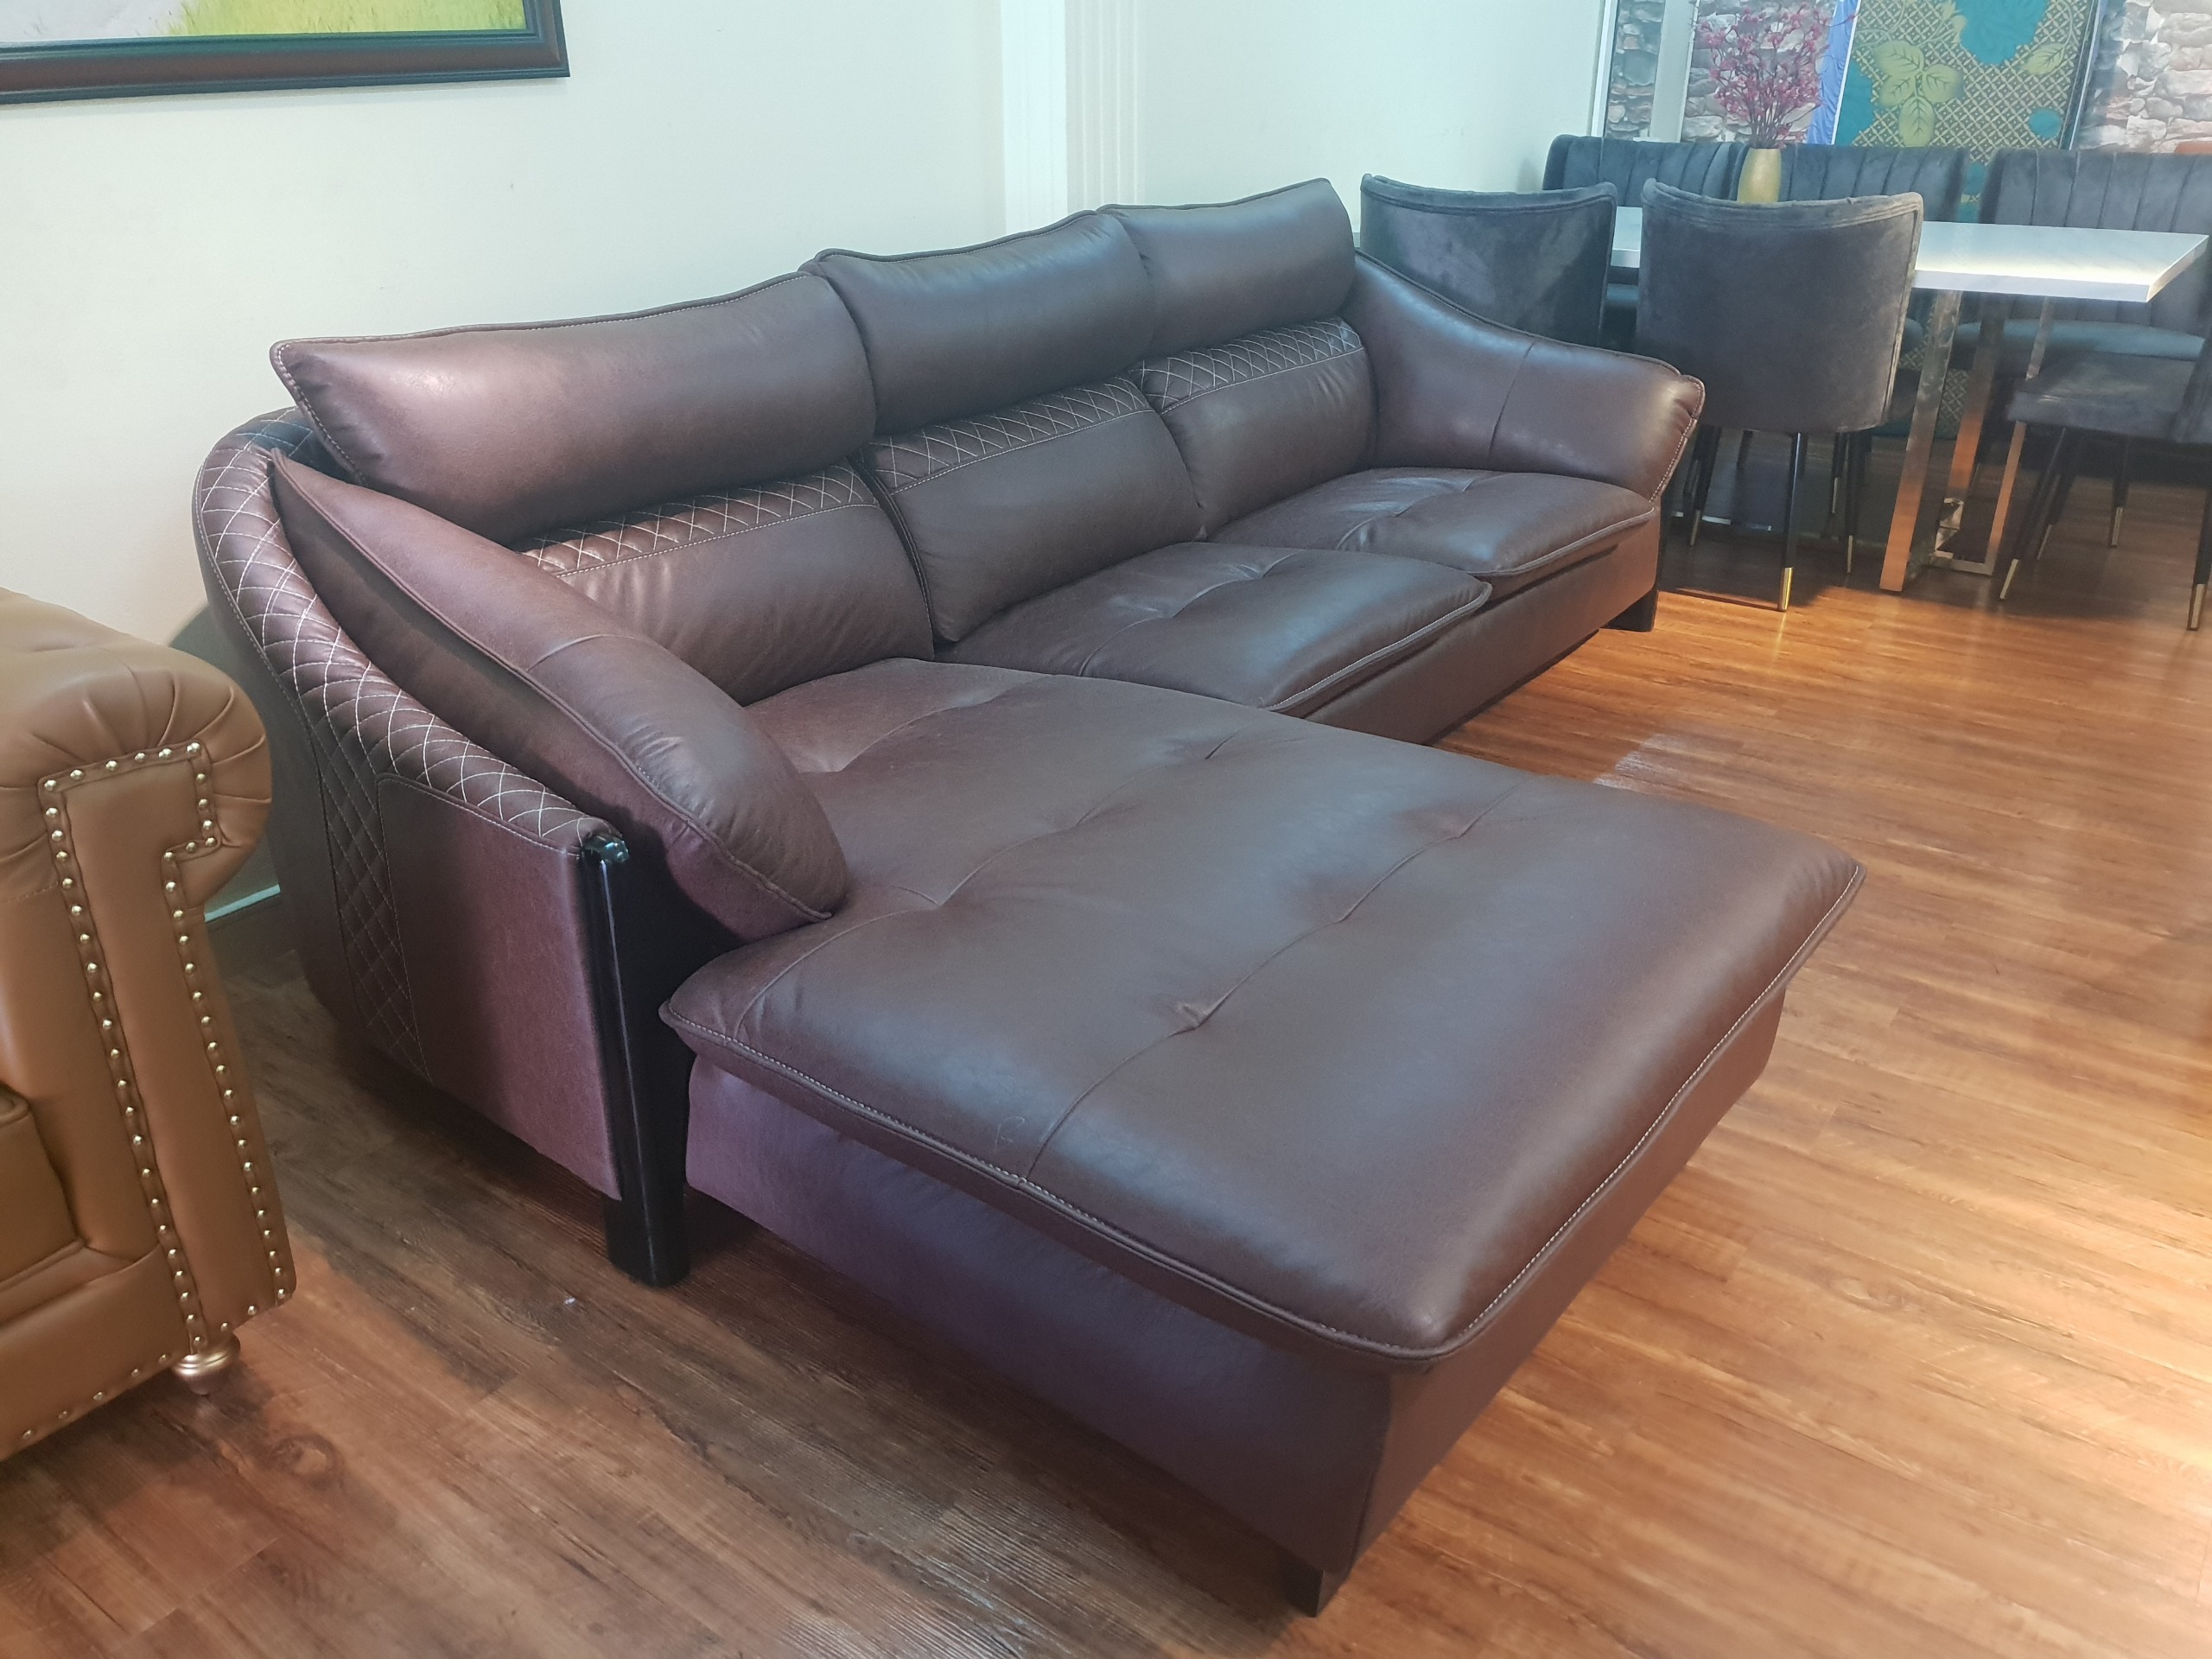 Bộ ghế sofa sang trọng cho phòng khách chữ L_Ghế màu nâu_Size 2700 x 1700